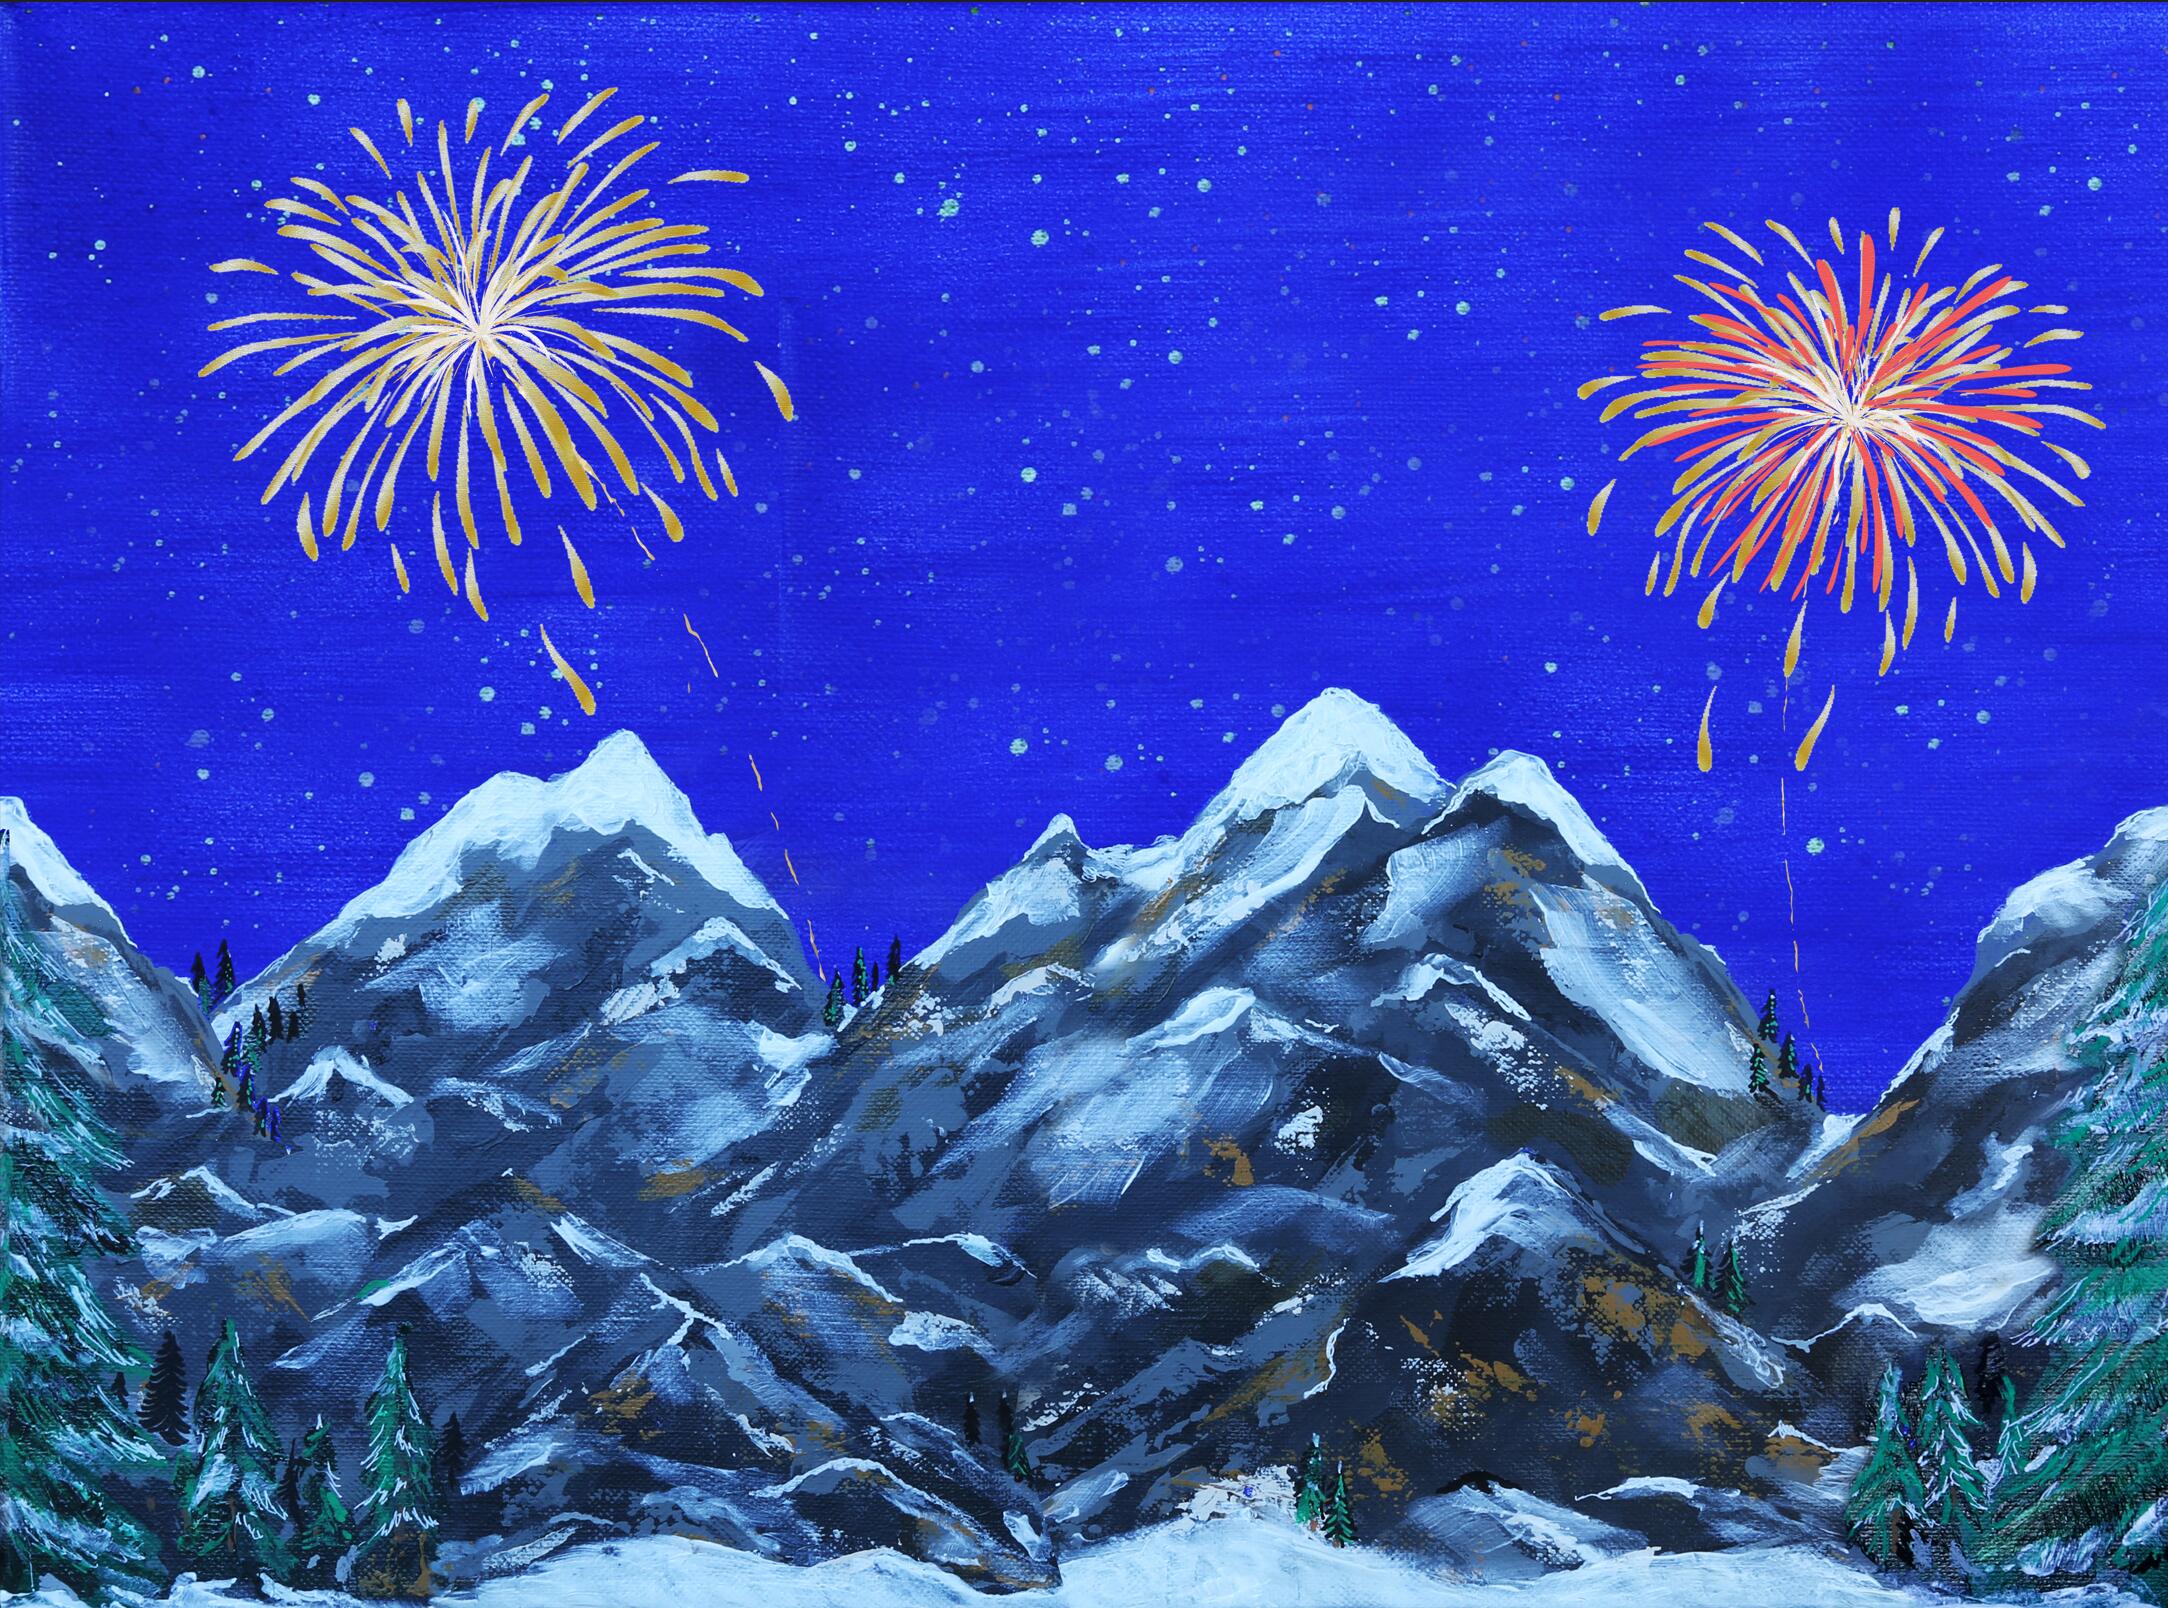 Achtergrond Canvas LED Vuurwerk 76X56 cm kerst - My Village